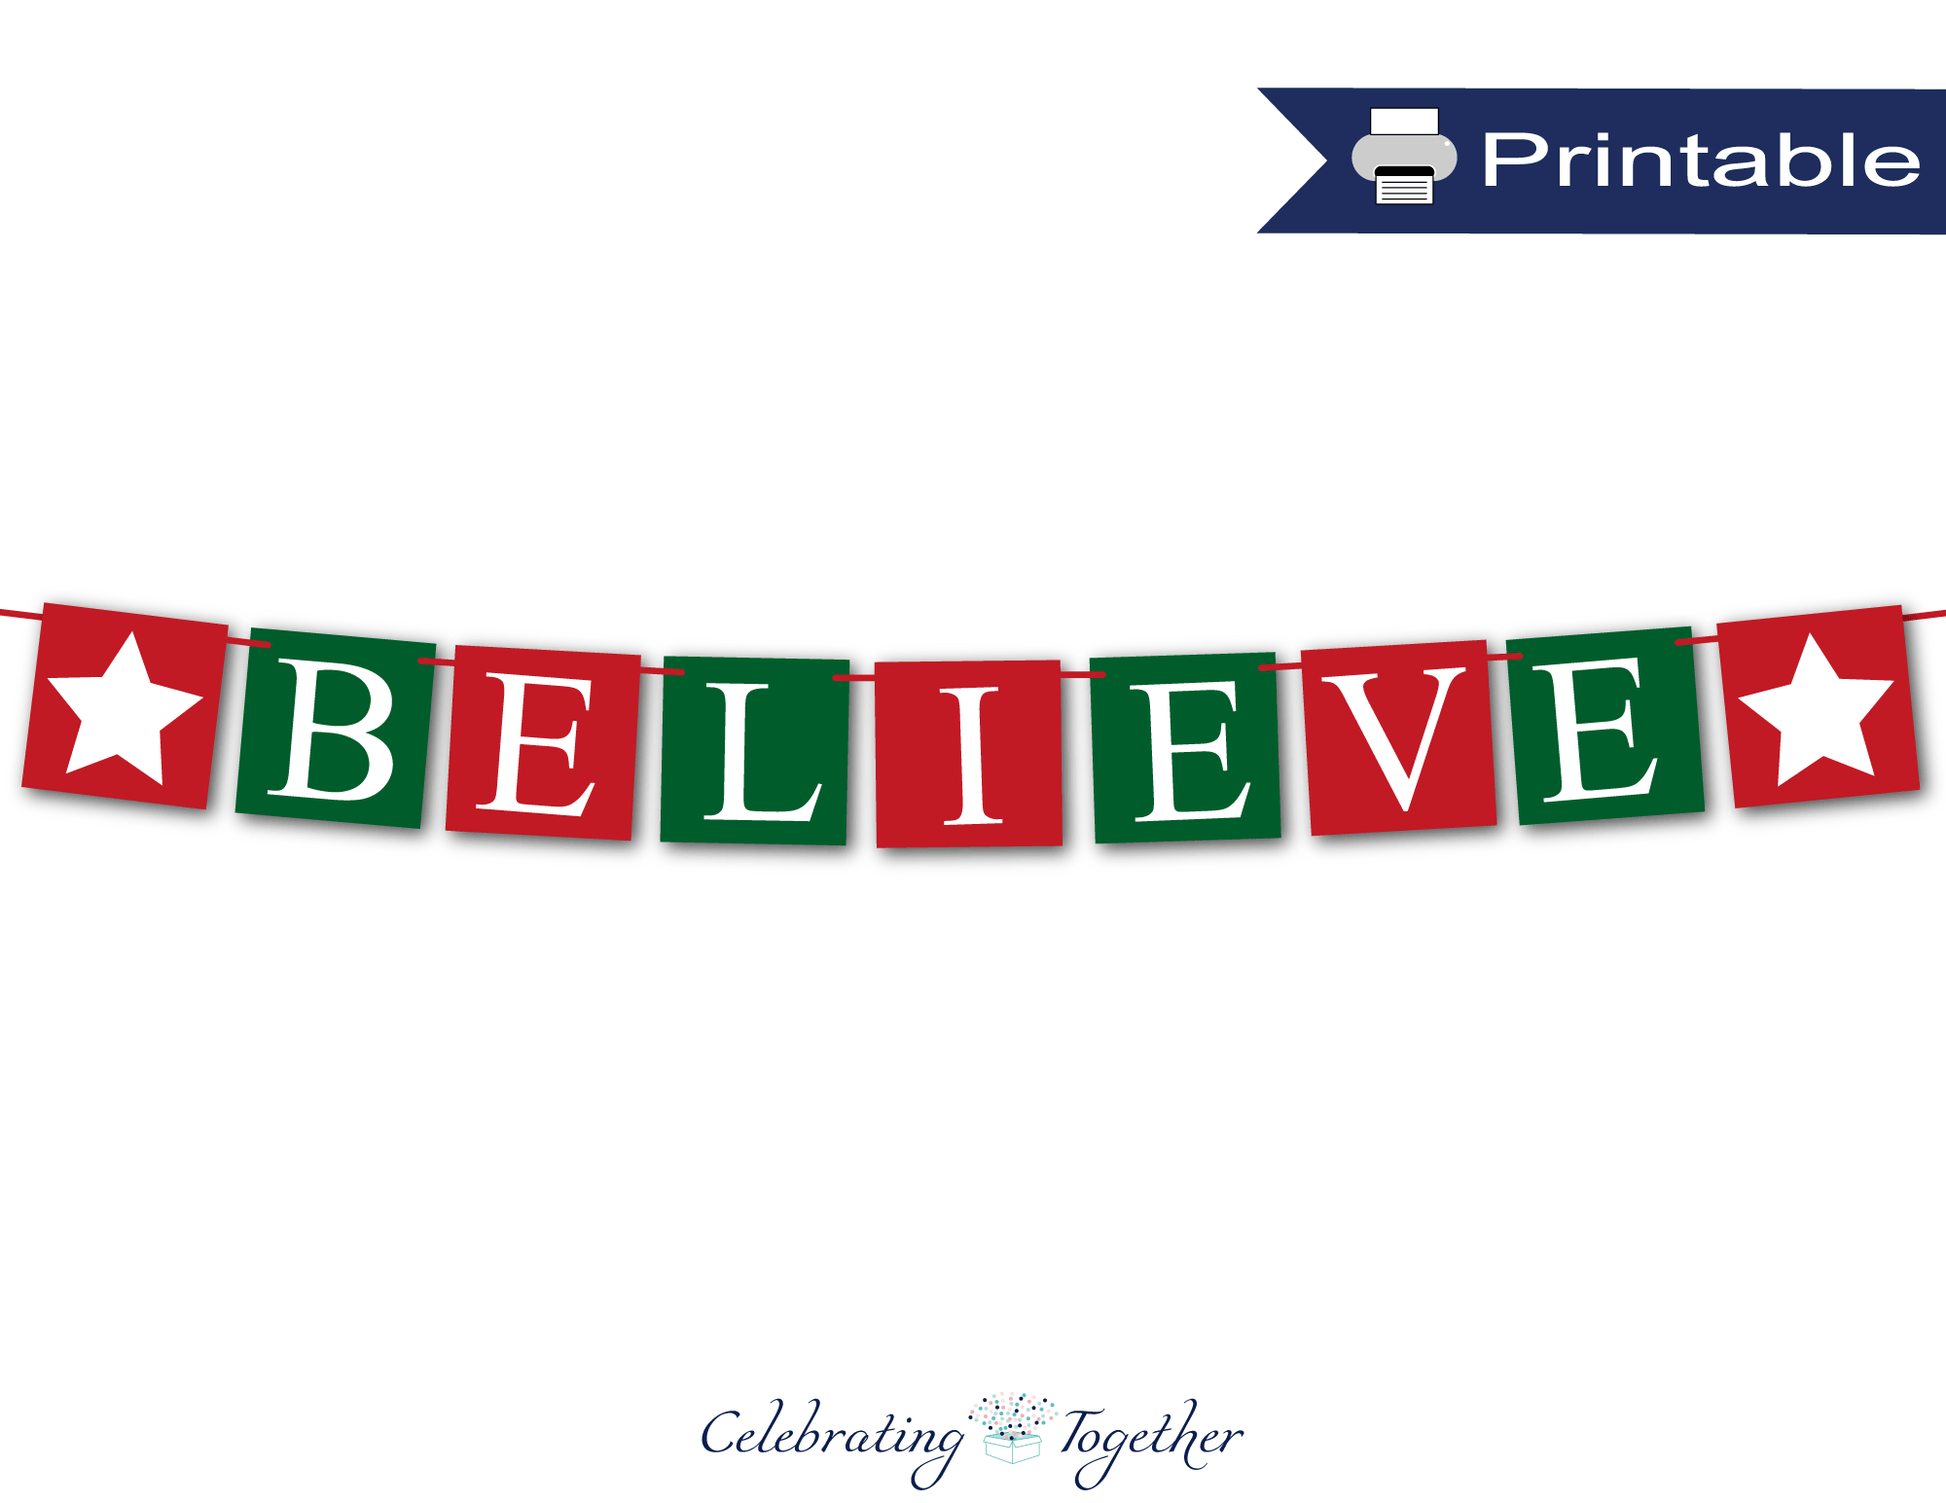 printable believe banner - festive DIY Christmas Decor - Celebrating Together